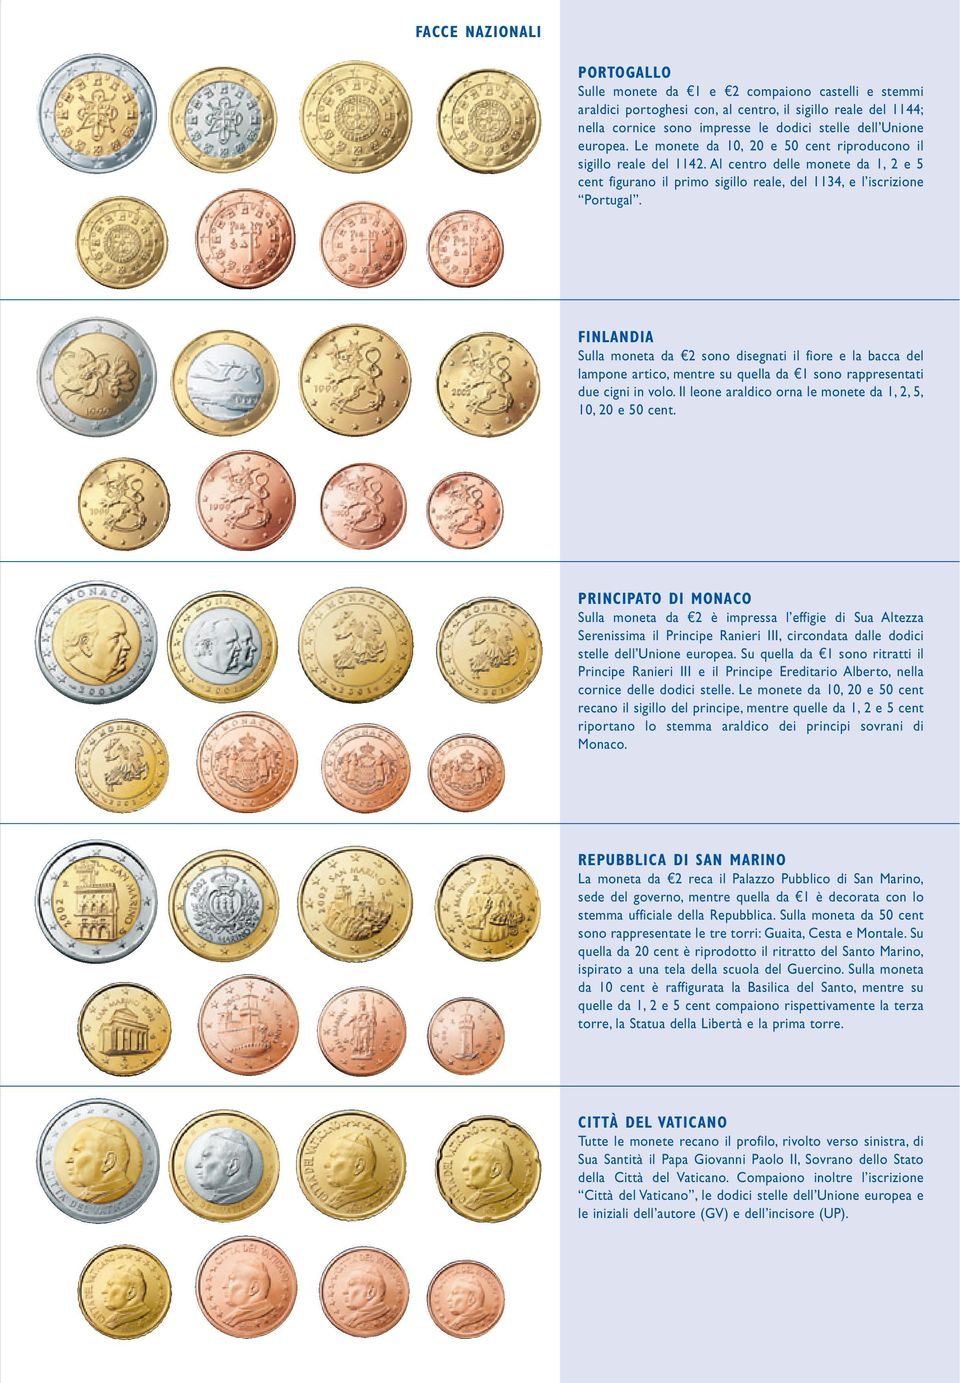 FINLANDIA Sulla moneta da e2 sono disegnati il fiore e la bacca del lampone artico, mentre su quella da e1 sono rappresentati due cigni in volo.